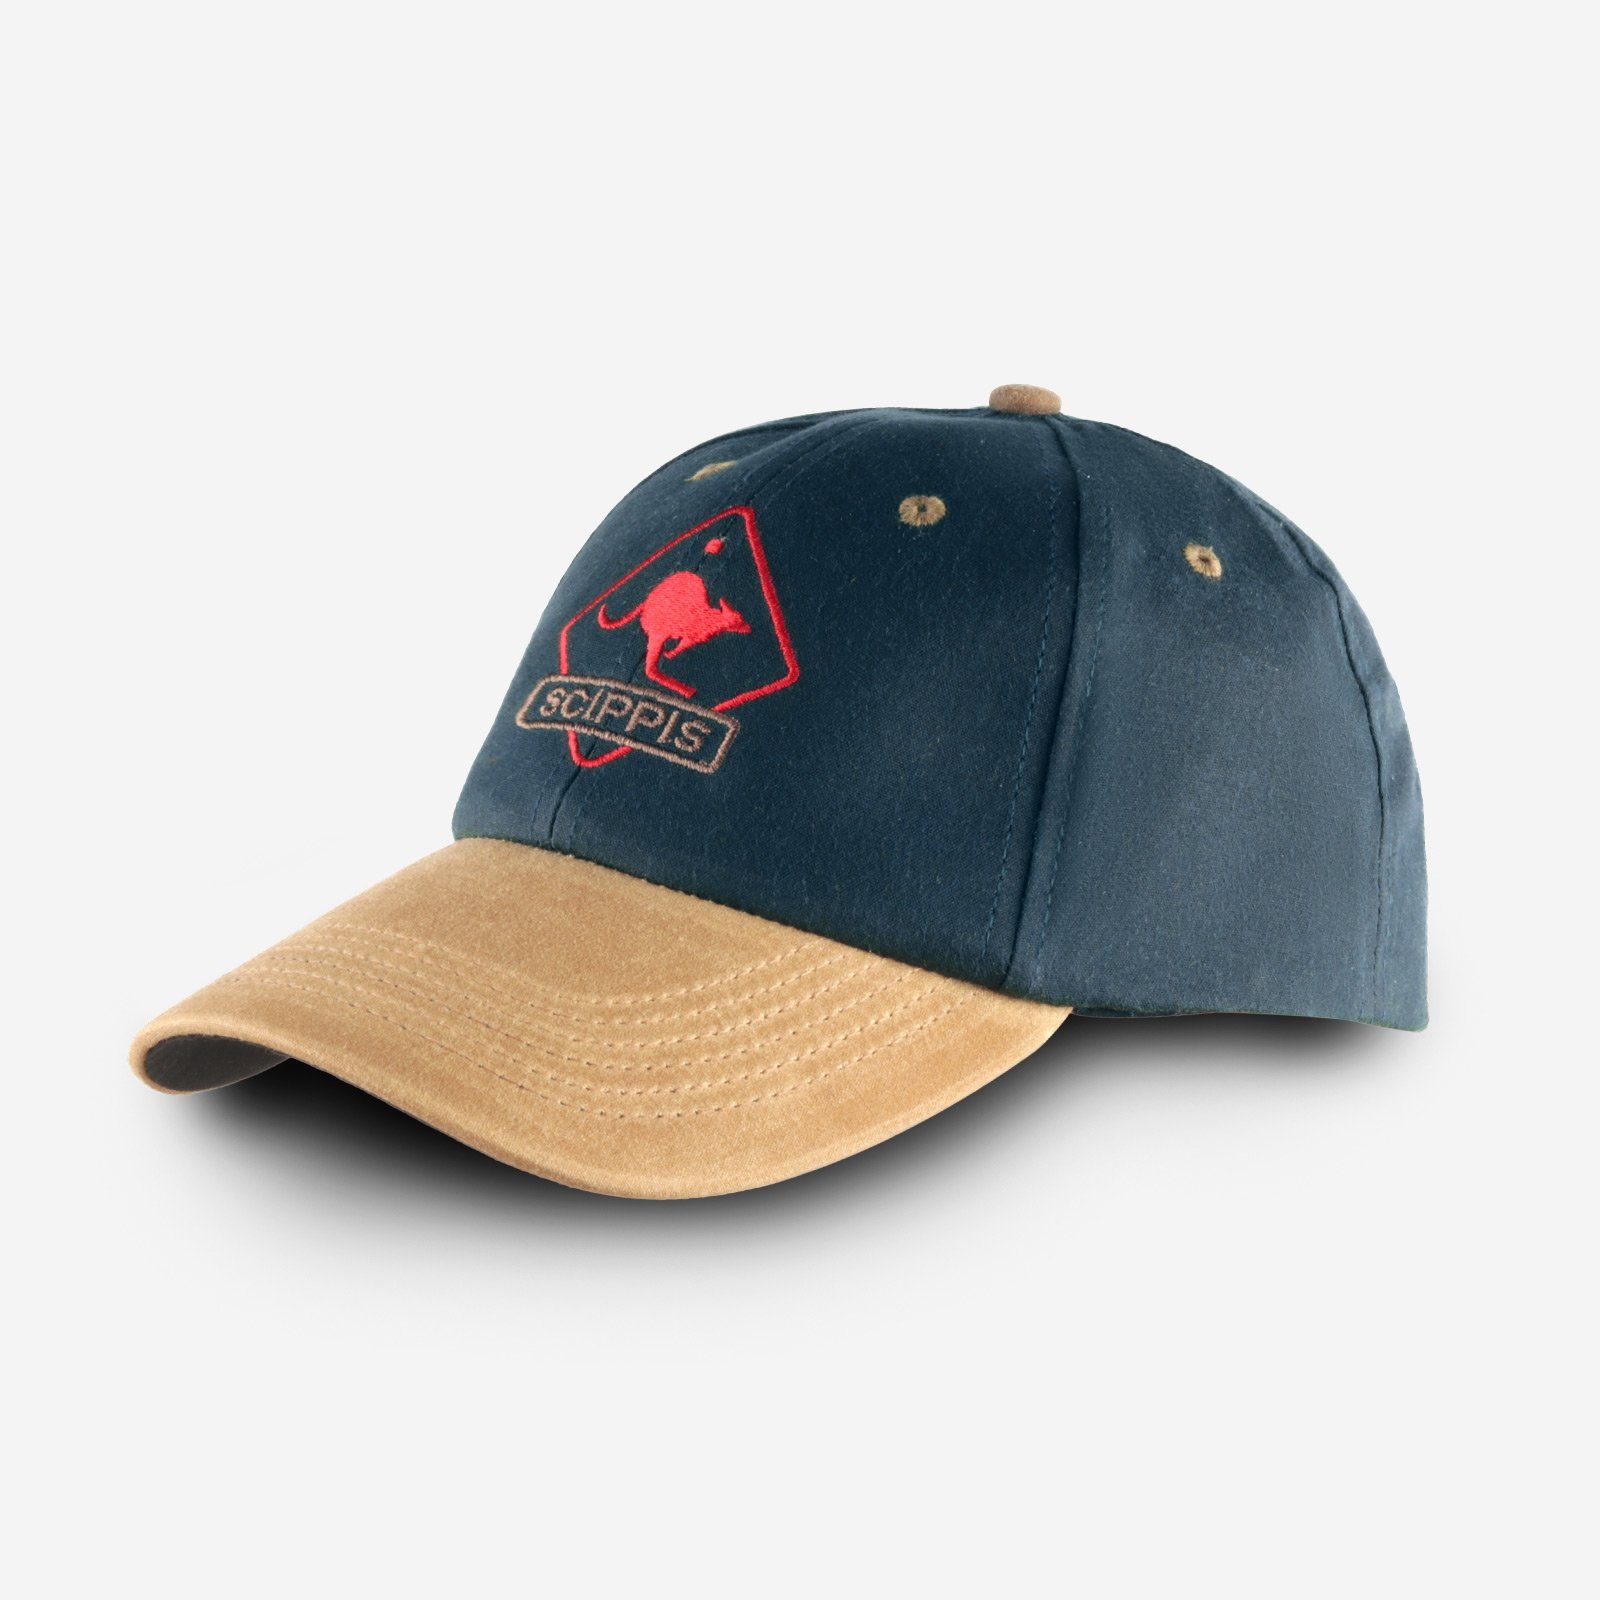 Scippis Baseball Cap OILSKIN CAP Extrem wasserabweisend, windundurchlässig atmungsaktiv tan/navy | Baseball Caps